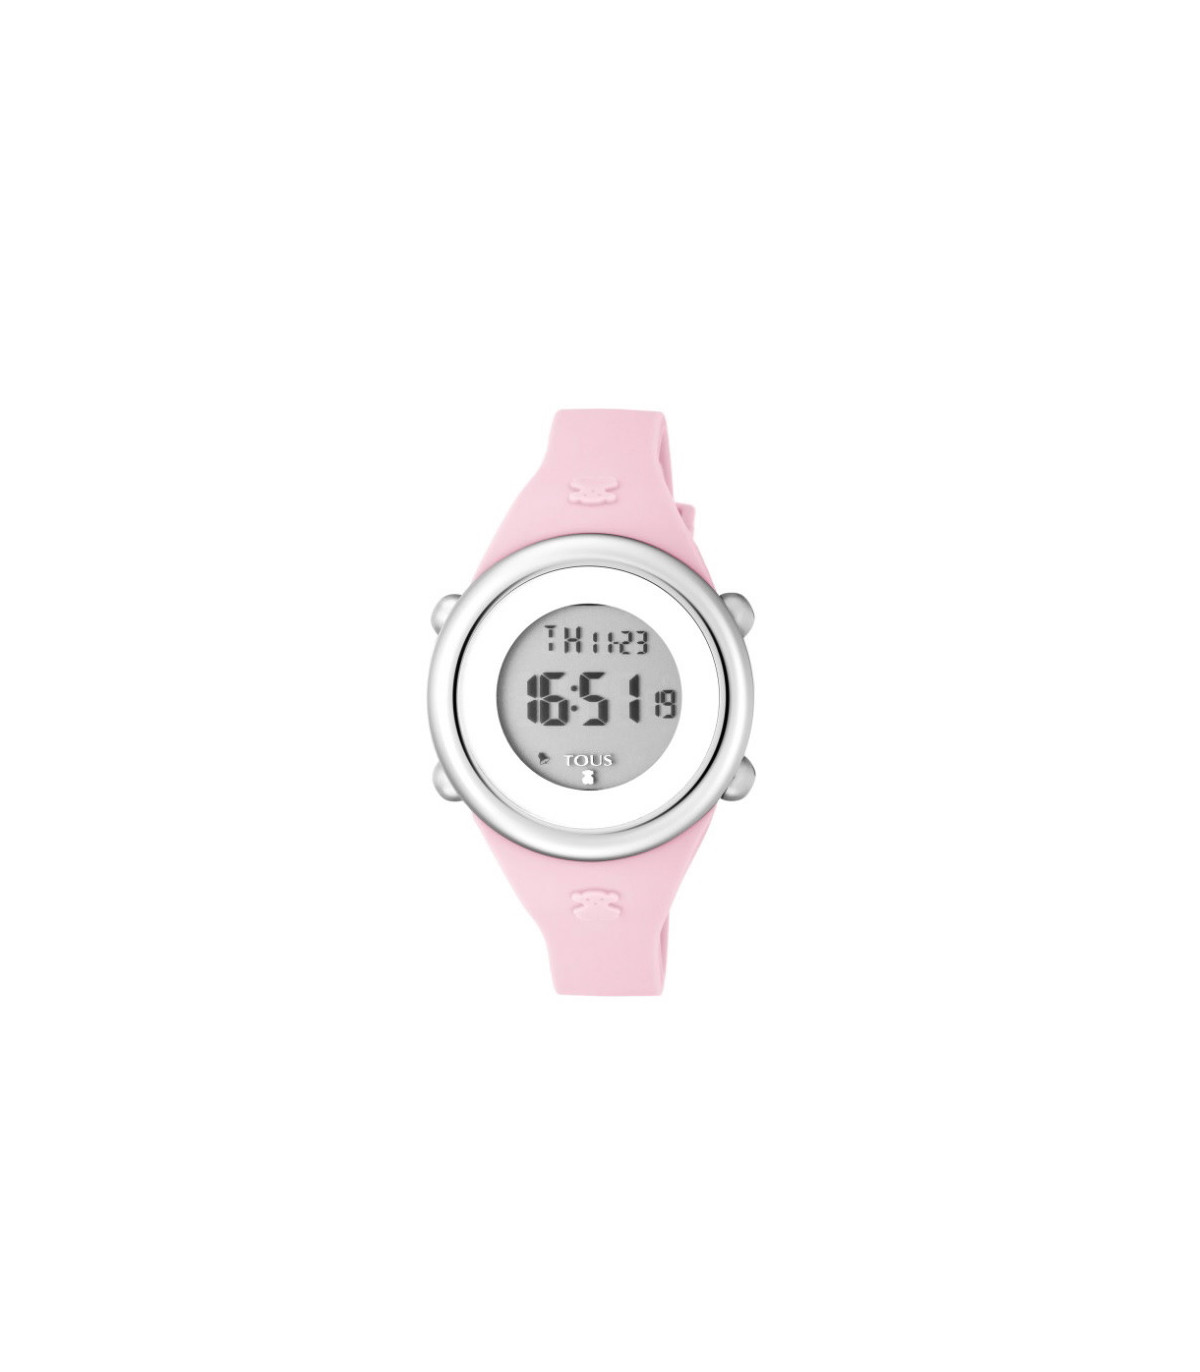 Reloj Tous Soft Digital de niña en silicona rosa y funciones digitales,  ref. 800350610.